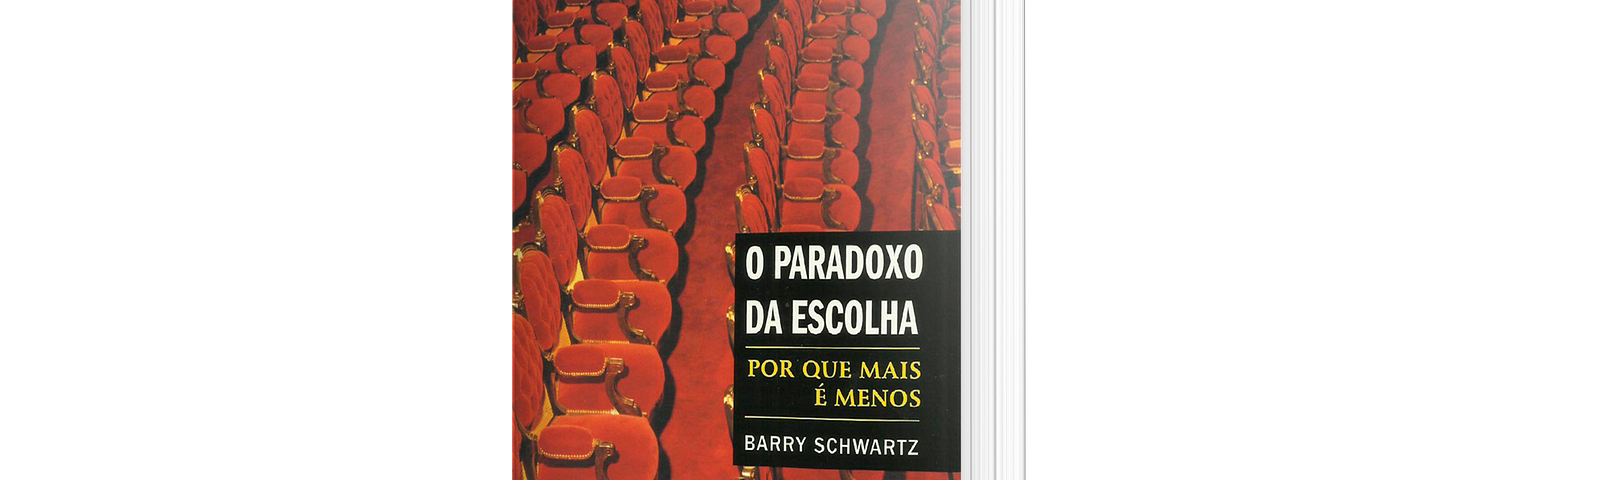 Capa do livro “O Paradoxo da Escolha”, de Barry Schwartz